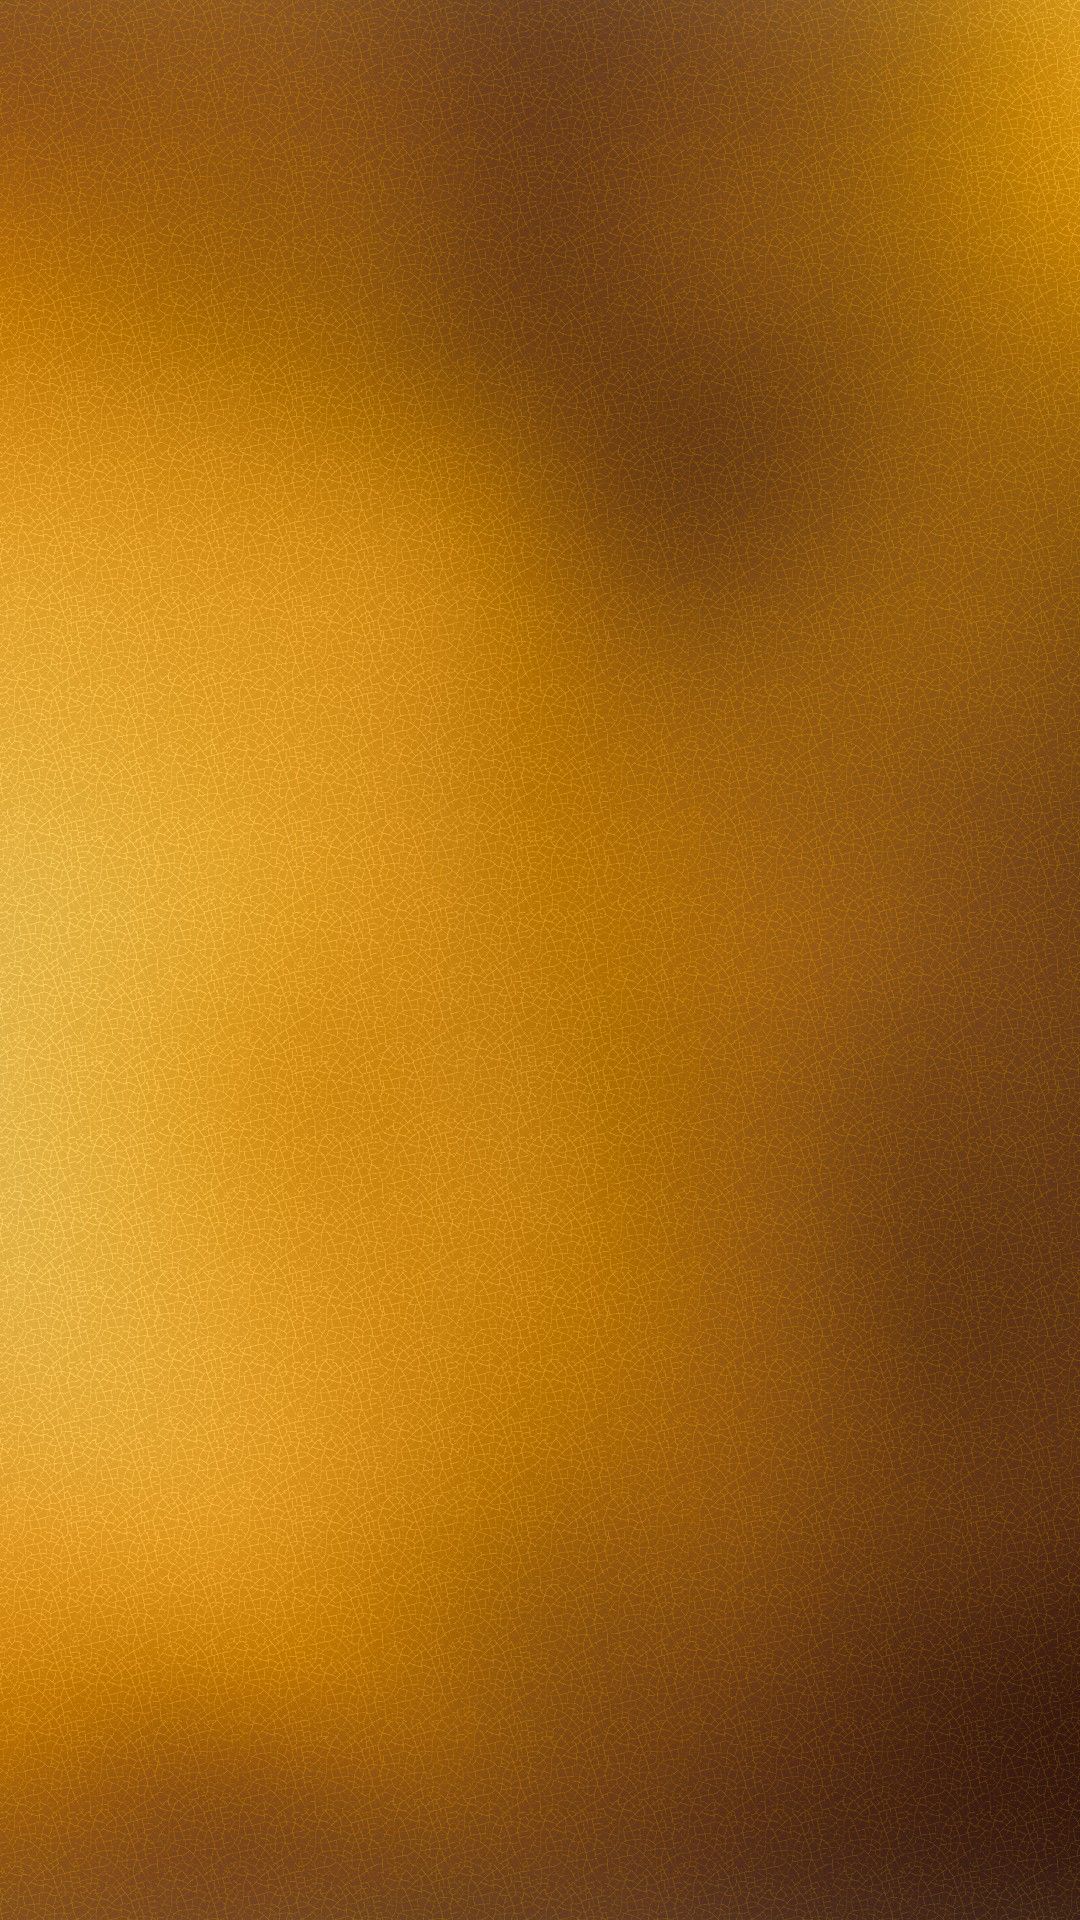 골드 컬러 벽지,노랑,주황색,하늘,호박색,갈색